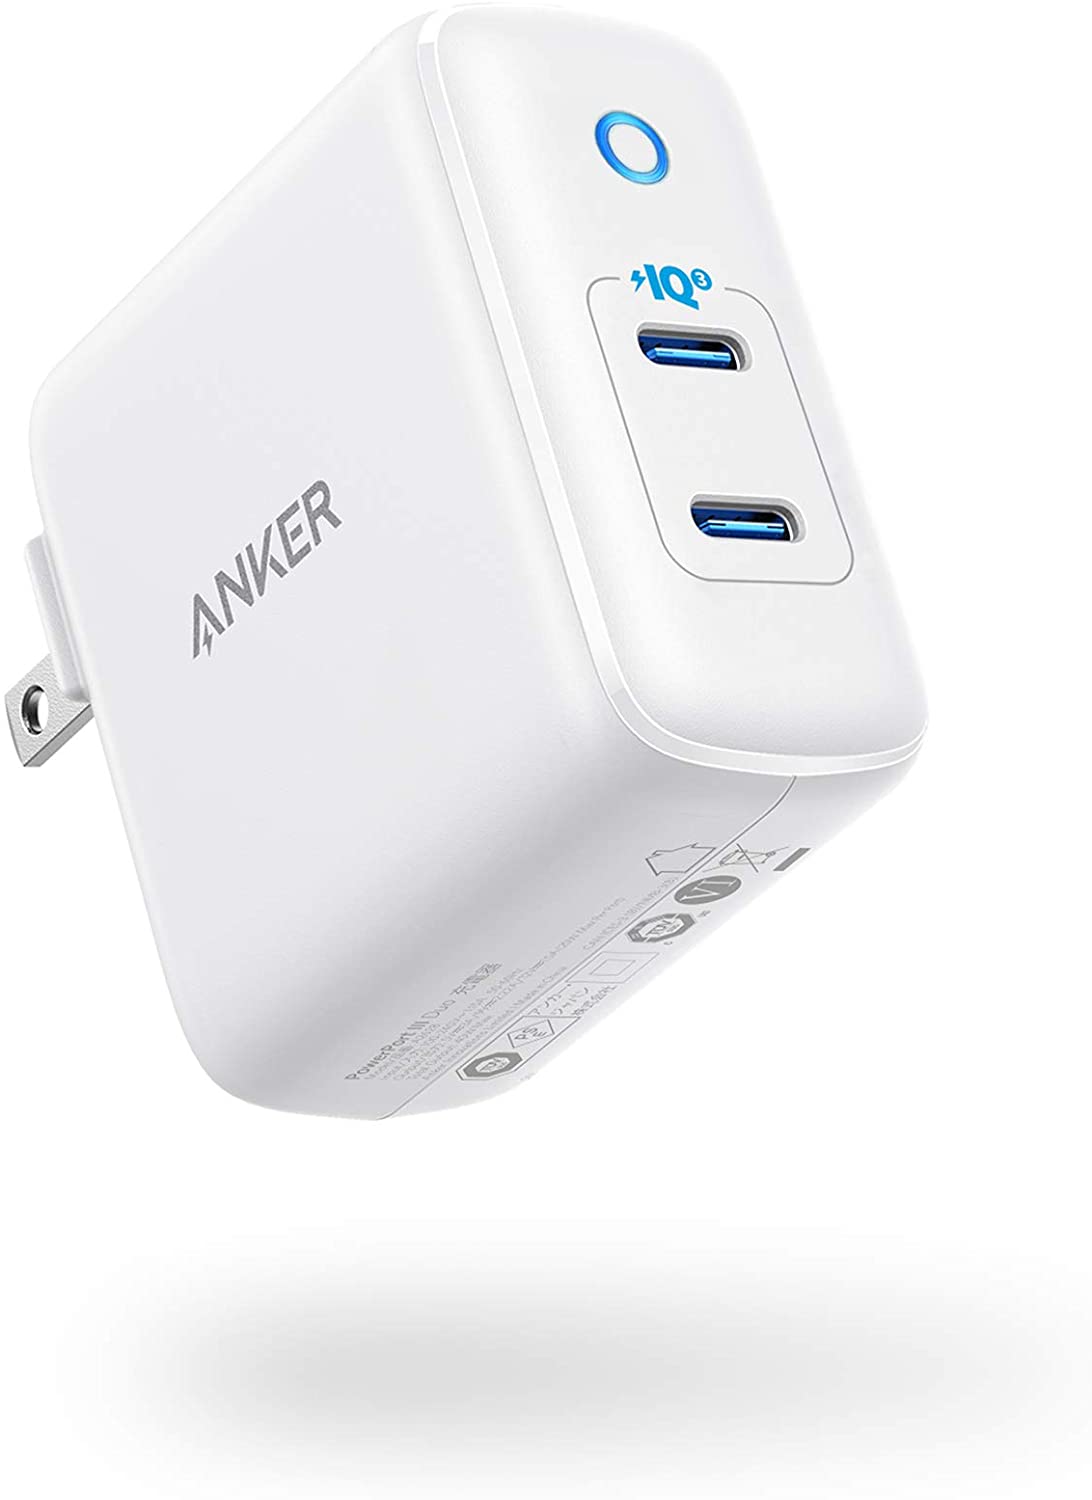 【美國代購】Anker 40W PIQ 3.0 PowerPort III Duo C 型可折疊快速充電器 為 iPhone Galaxy Pixel iPad/iPad 供電